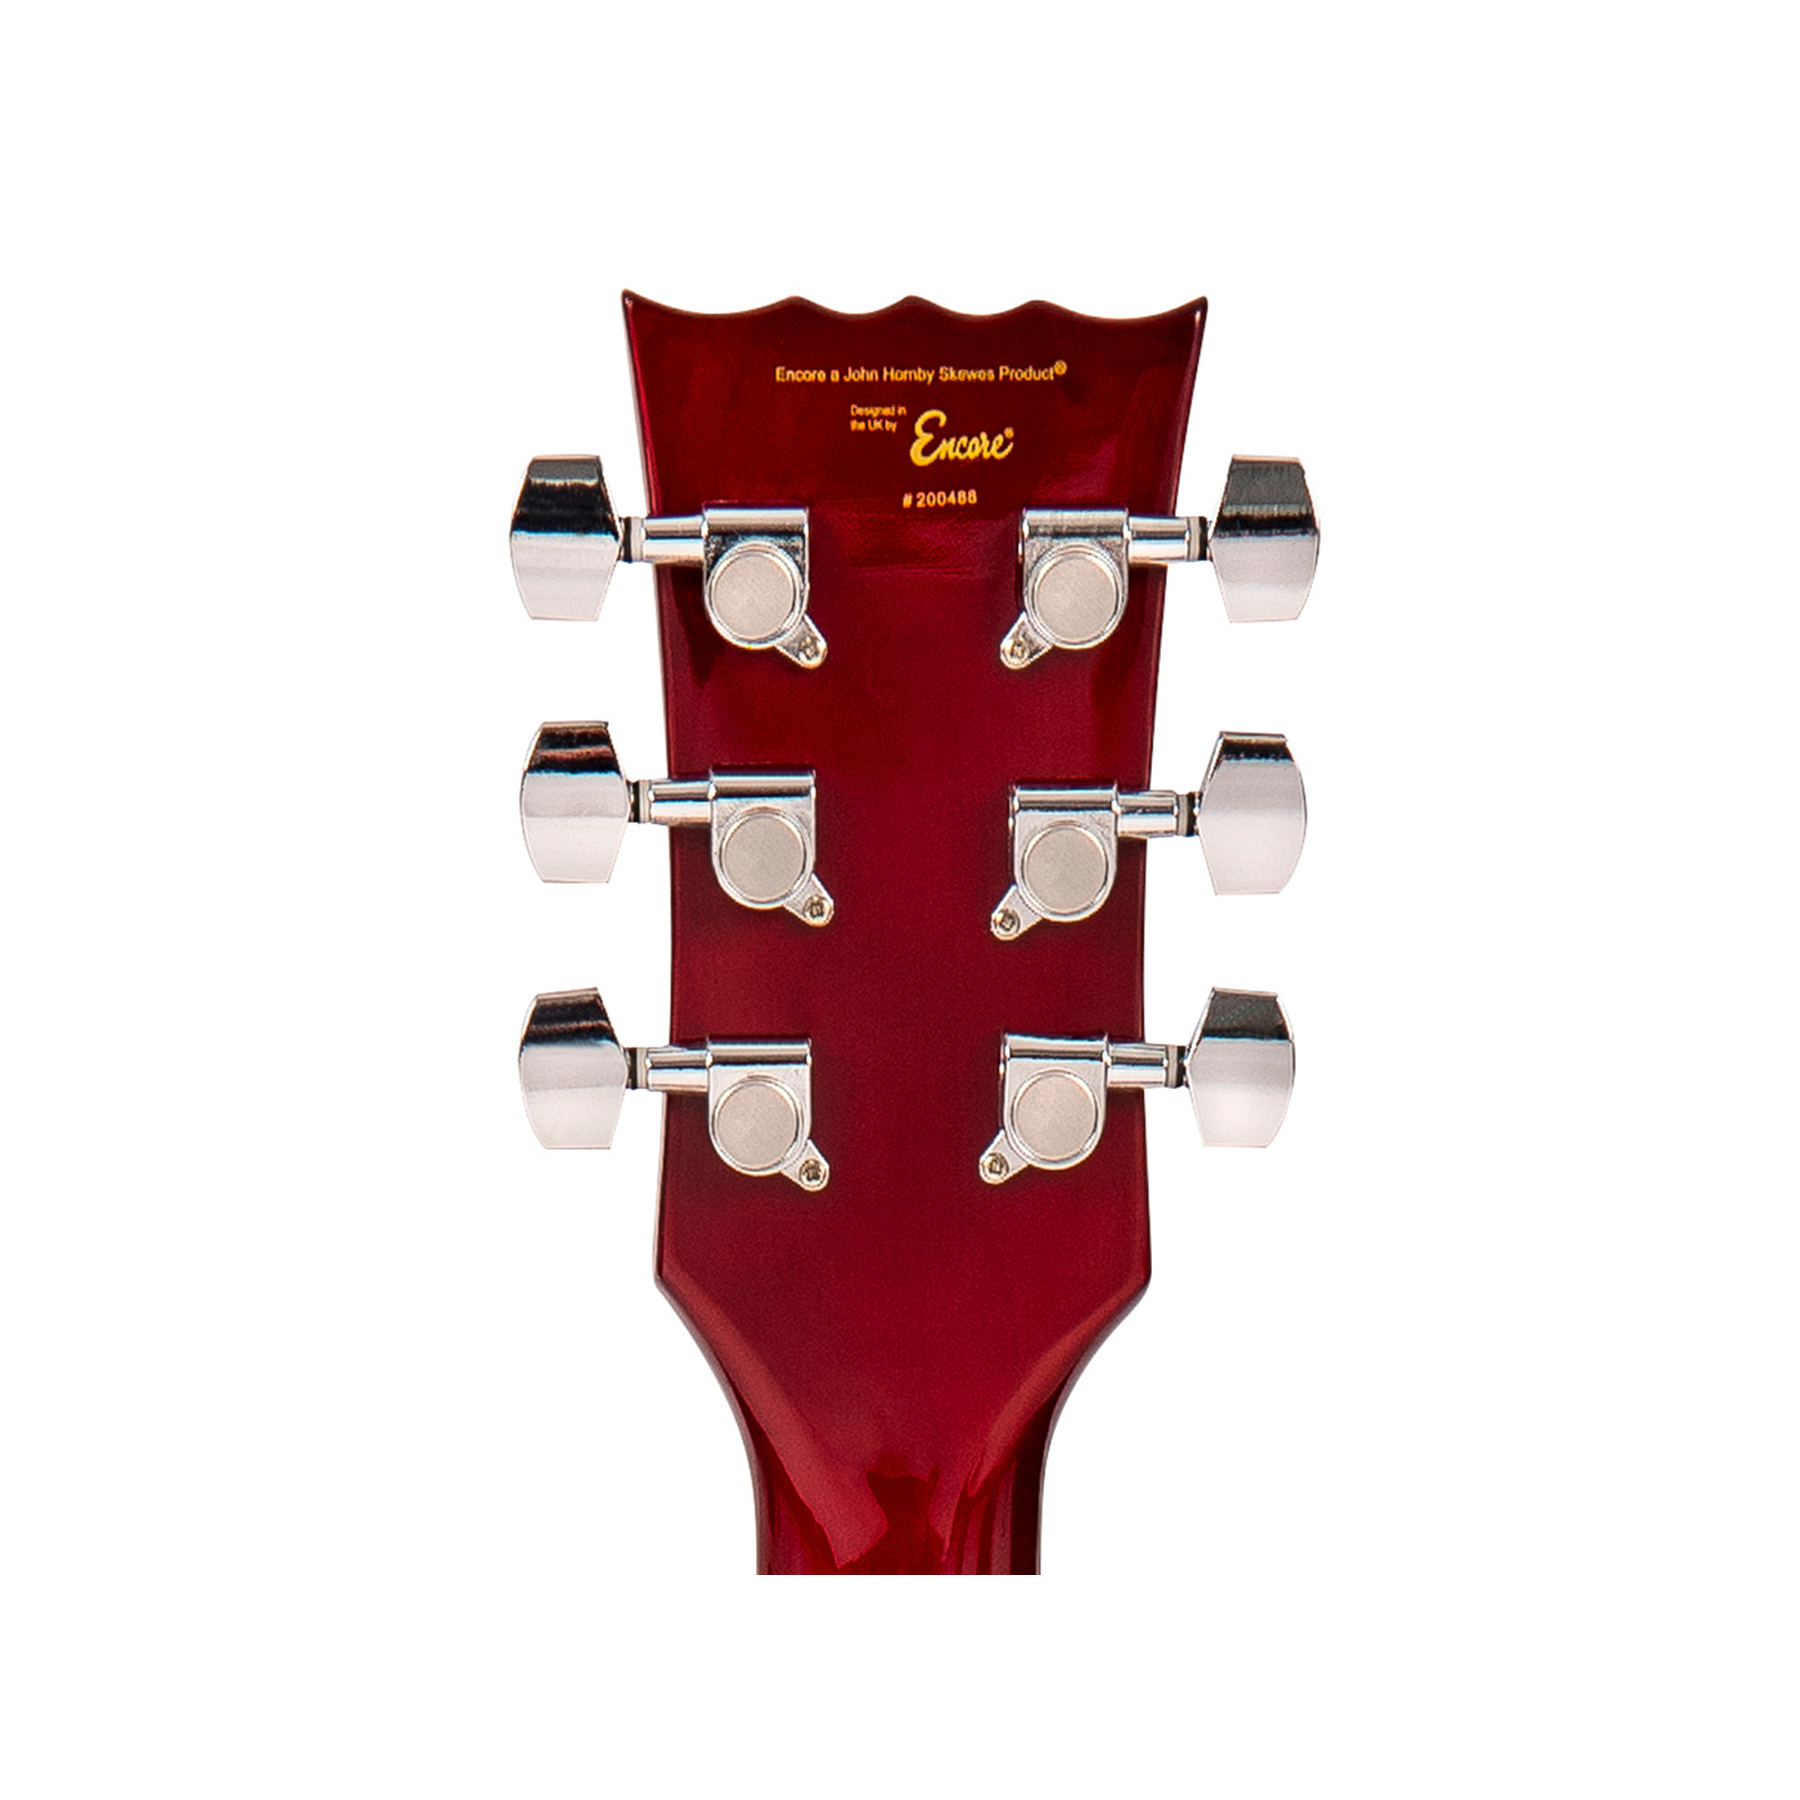 E99 Guitarra Eléctrica Cherry Red Encore